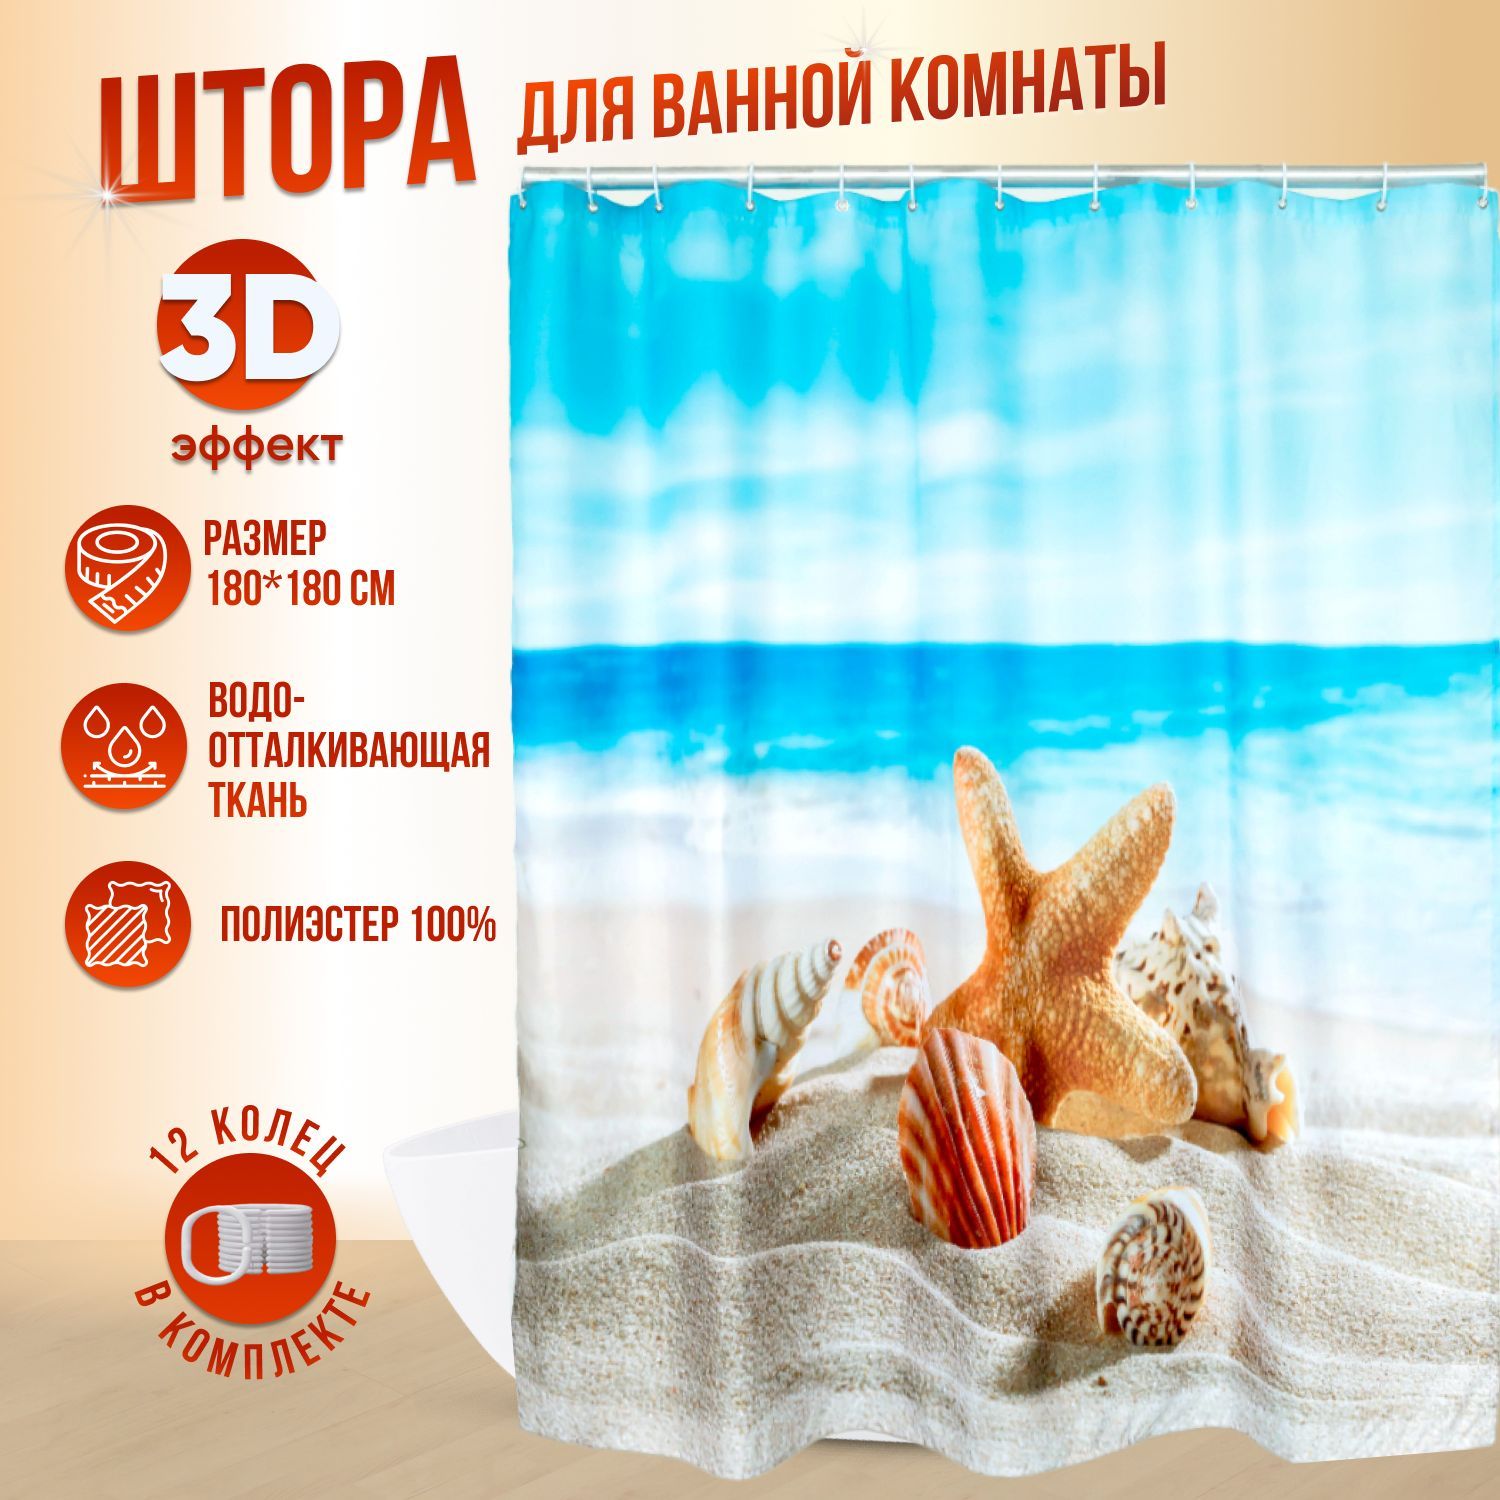 Купить готовые 3D шторы недорого в интернет магазине в Москве, большой каталог, цены от 2 руб.